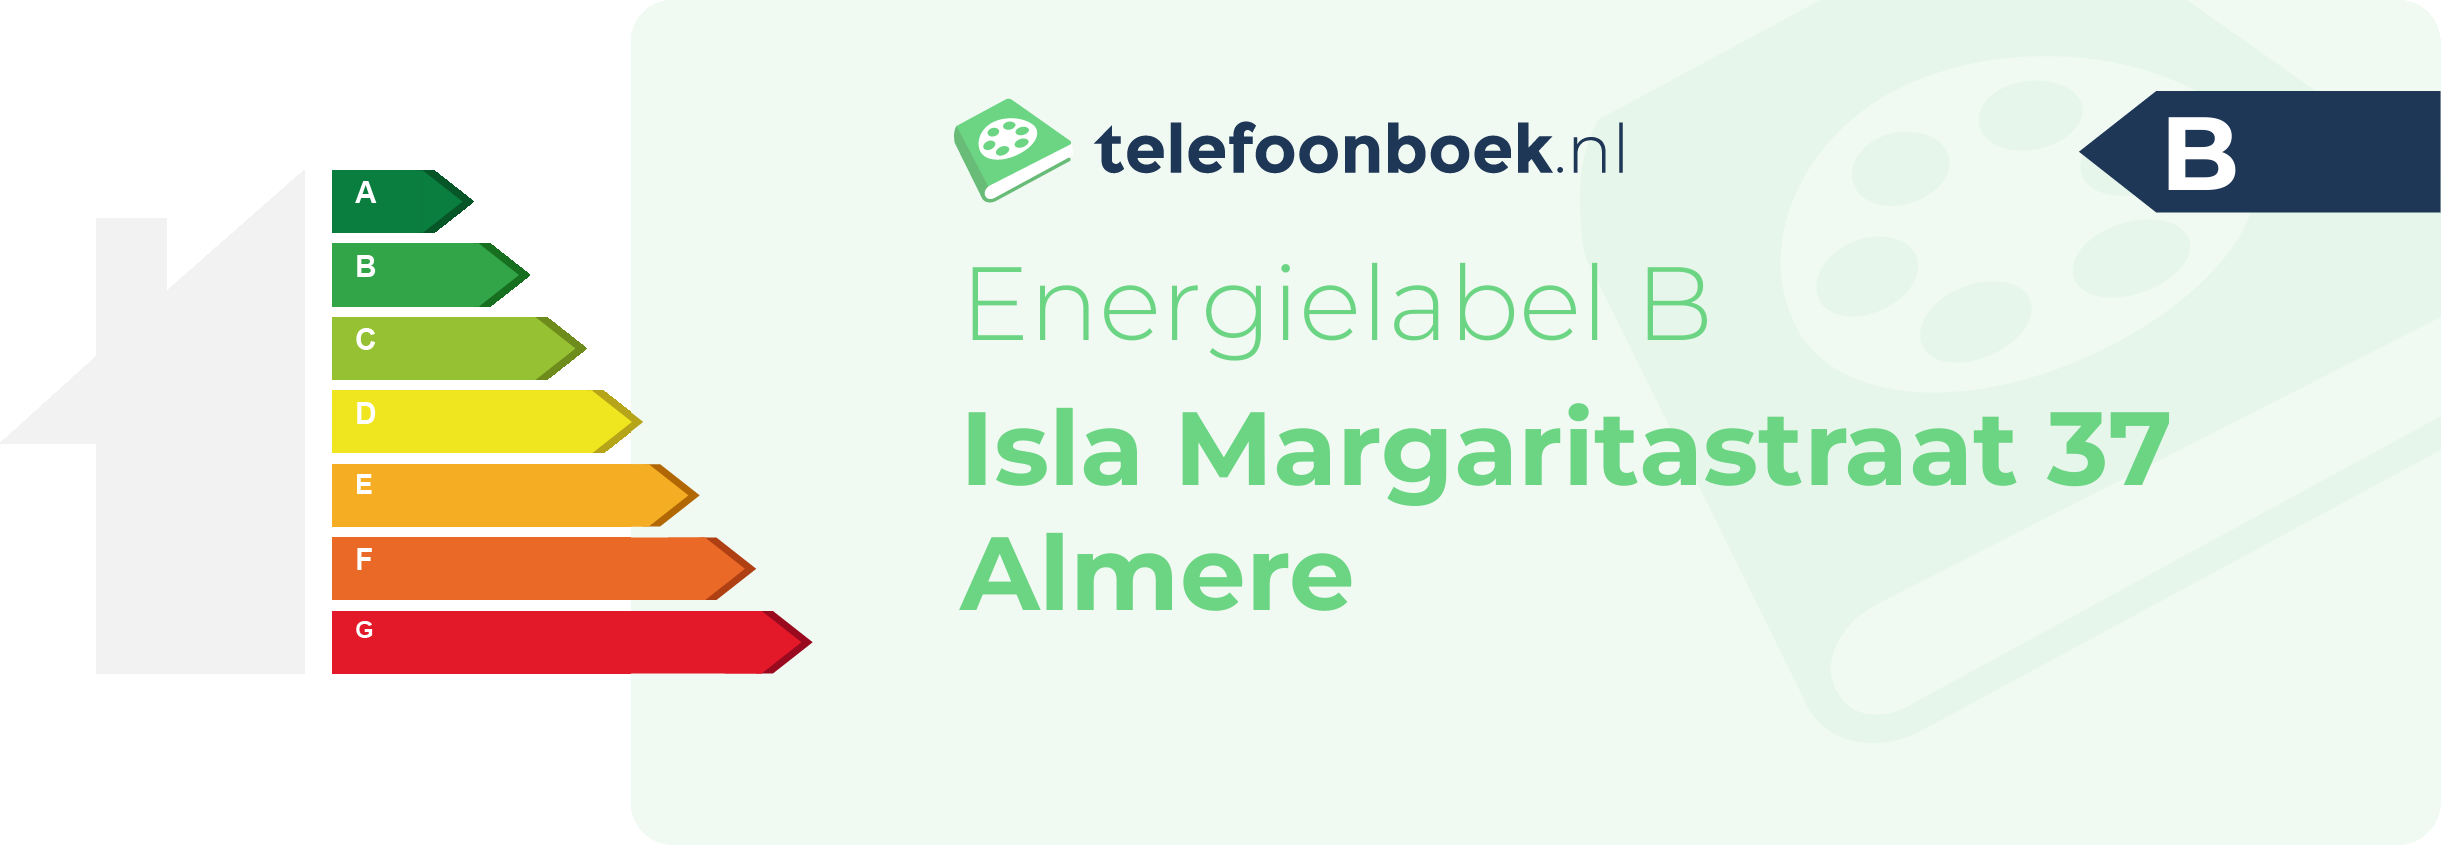 Energielabel Isla Margaritastraat 37 Almere